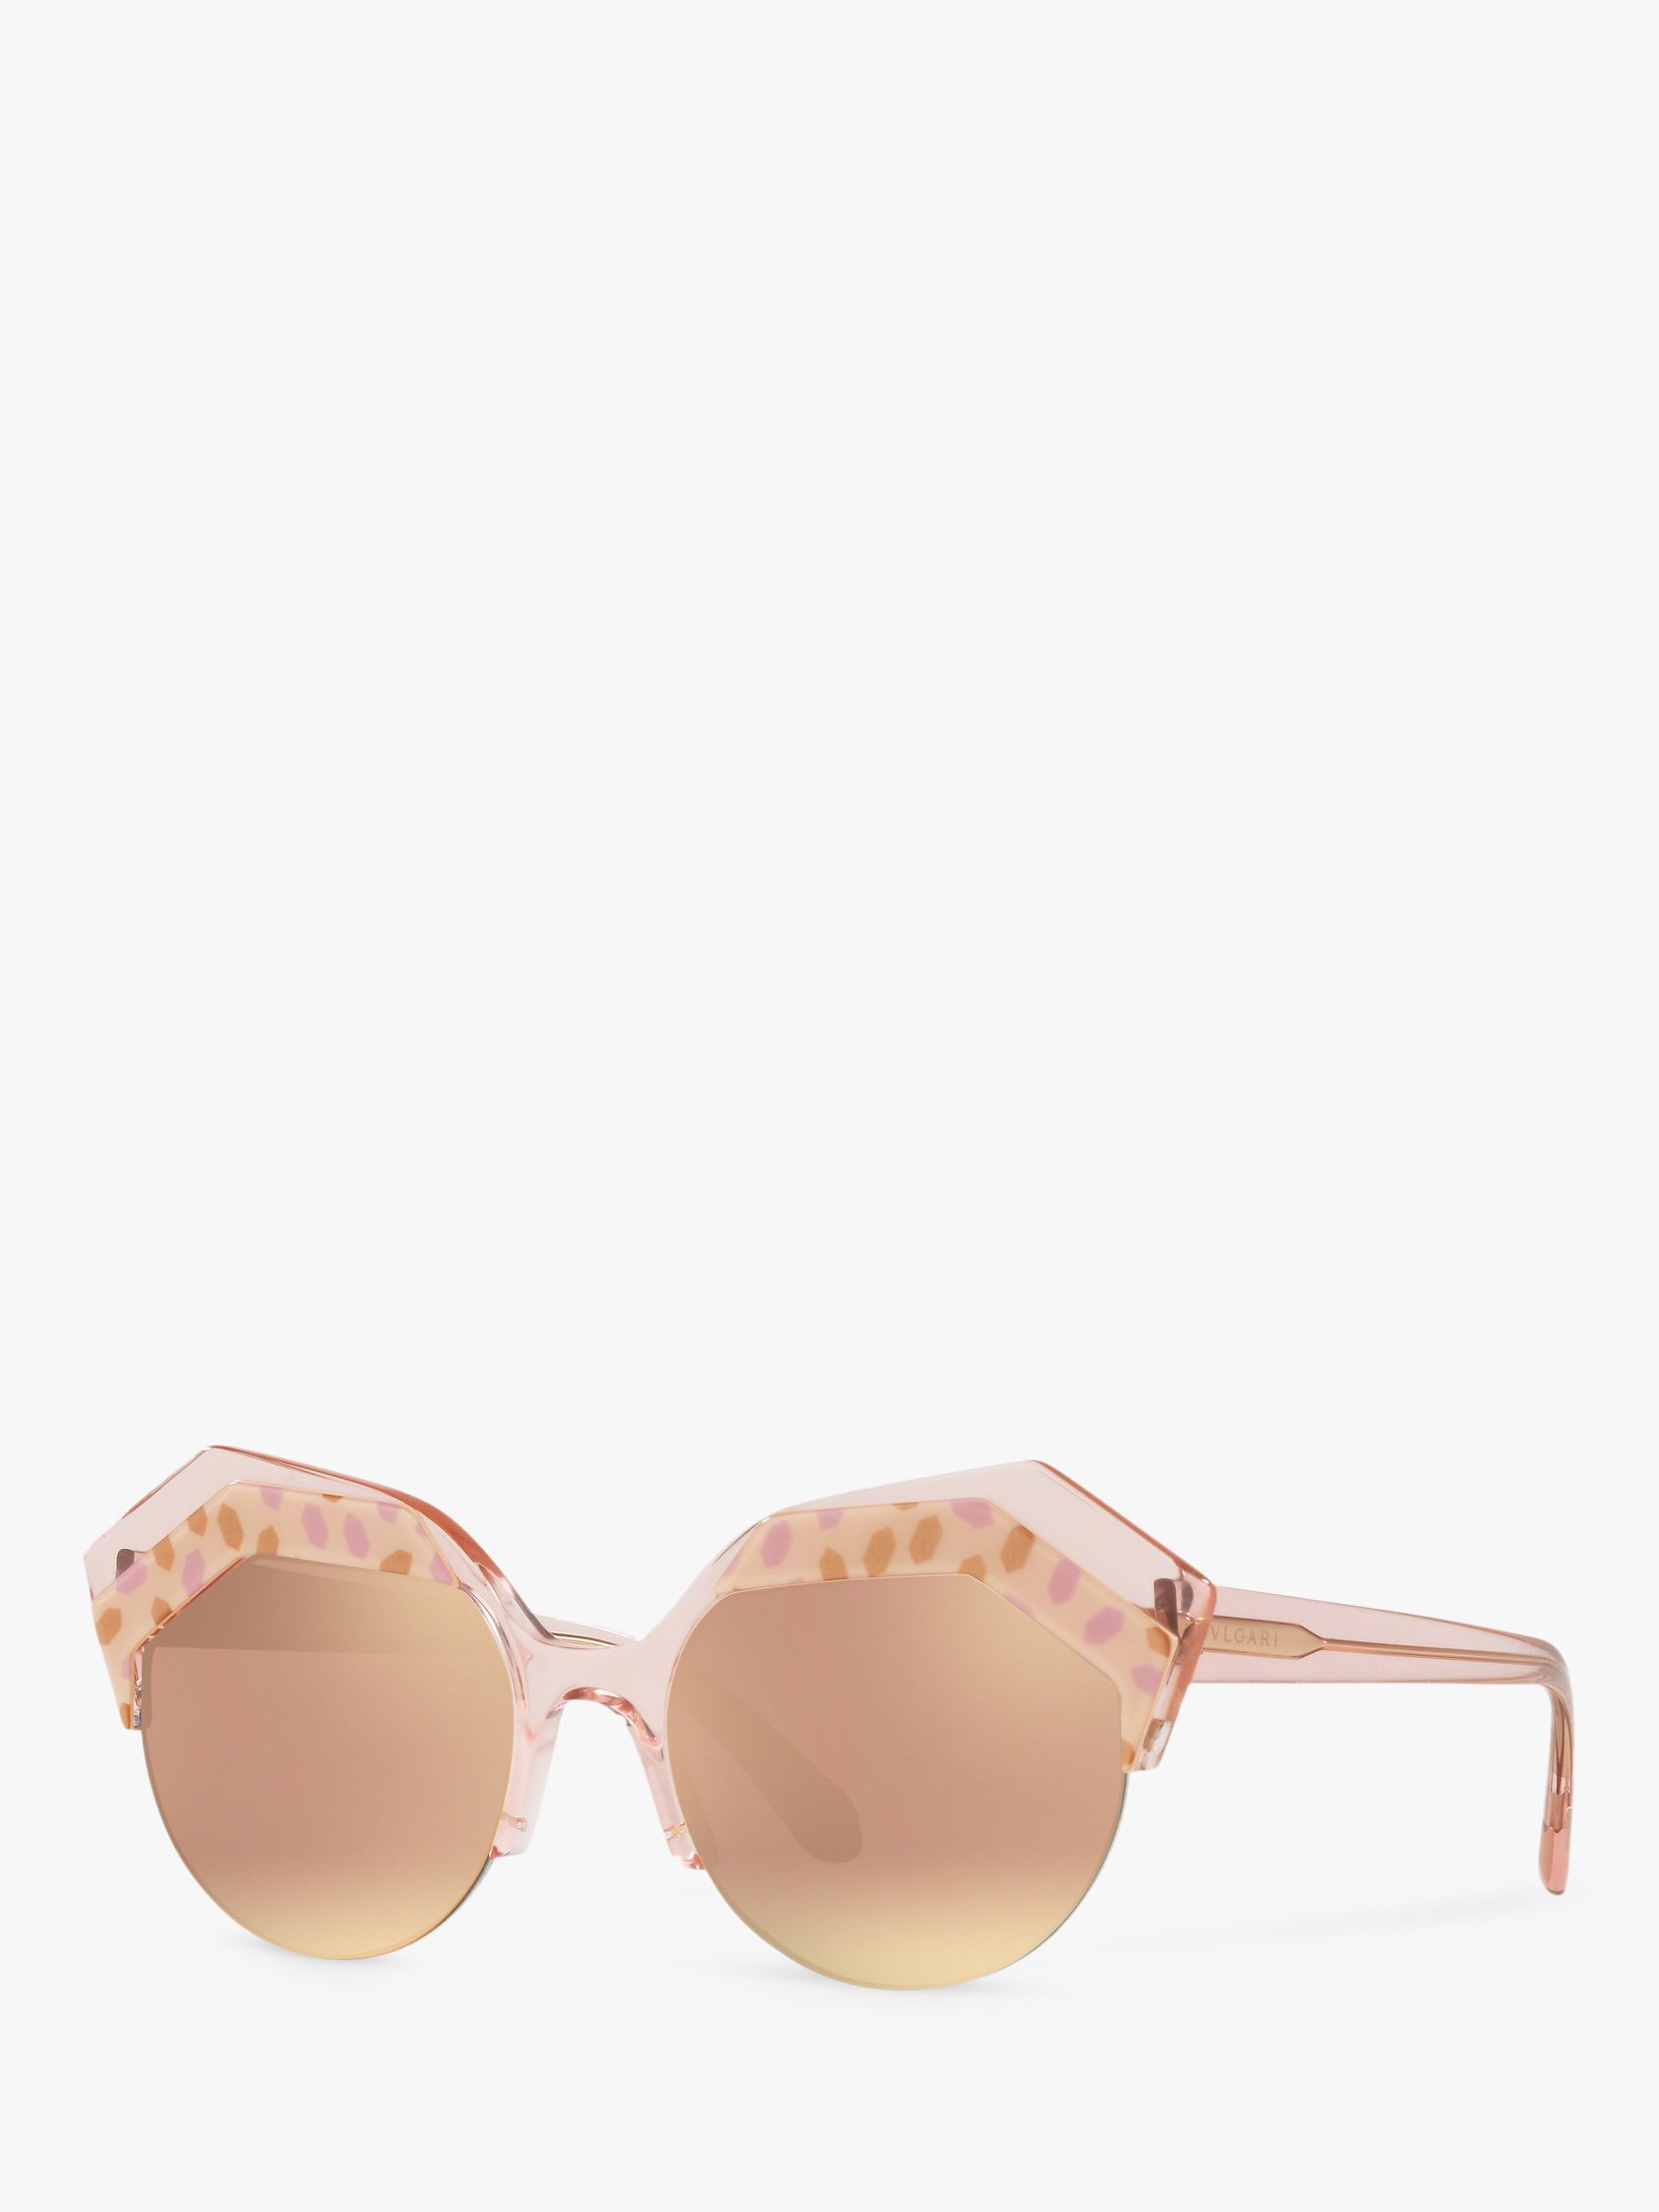 bvlgari pink mirror sunglasses